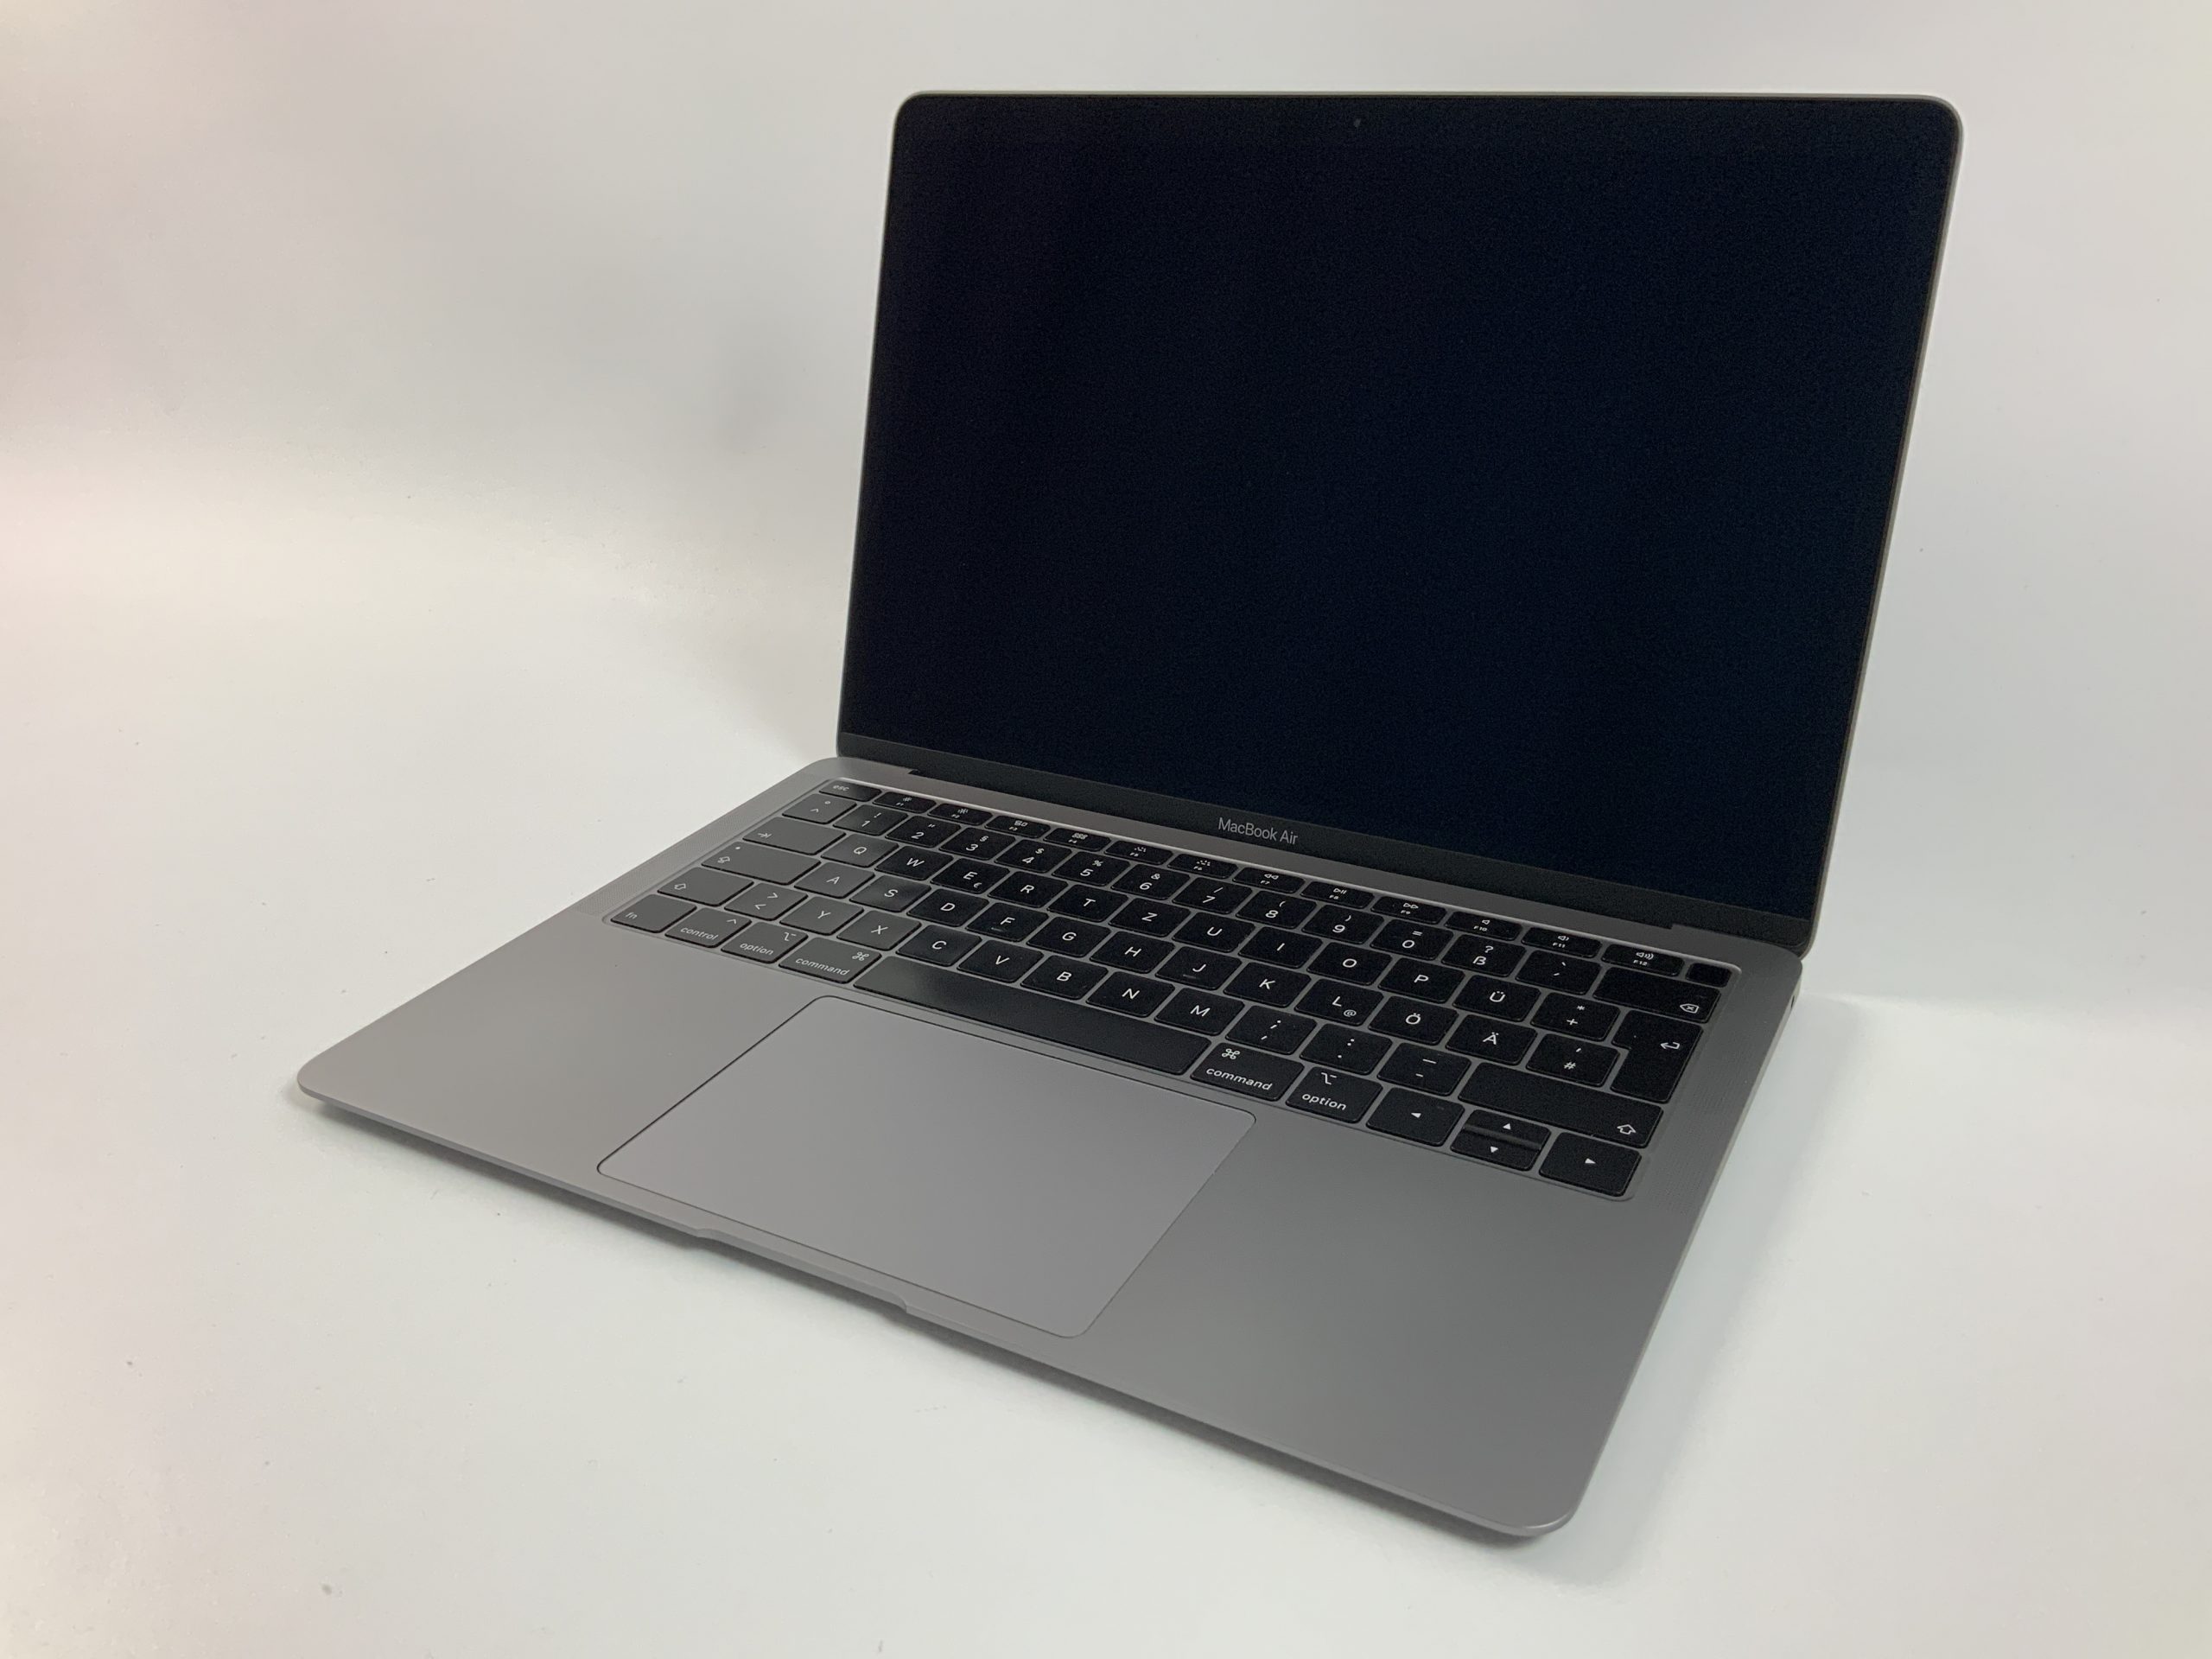 MacBook Air 13" Mid 2019 (Intel Core i5 1.6 GHz 8 GB RAM 512 GB SSD), Space Gray, Intel Core i5 1.6 GHz, 8 GB RAM, 512 GB SSD, image 1